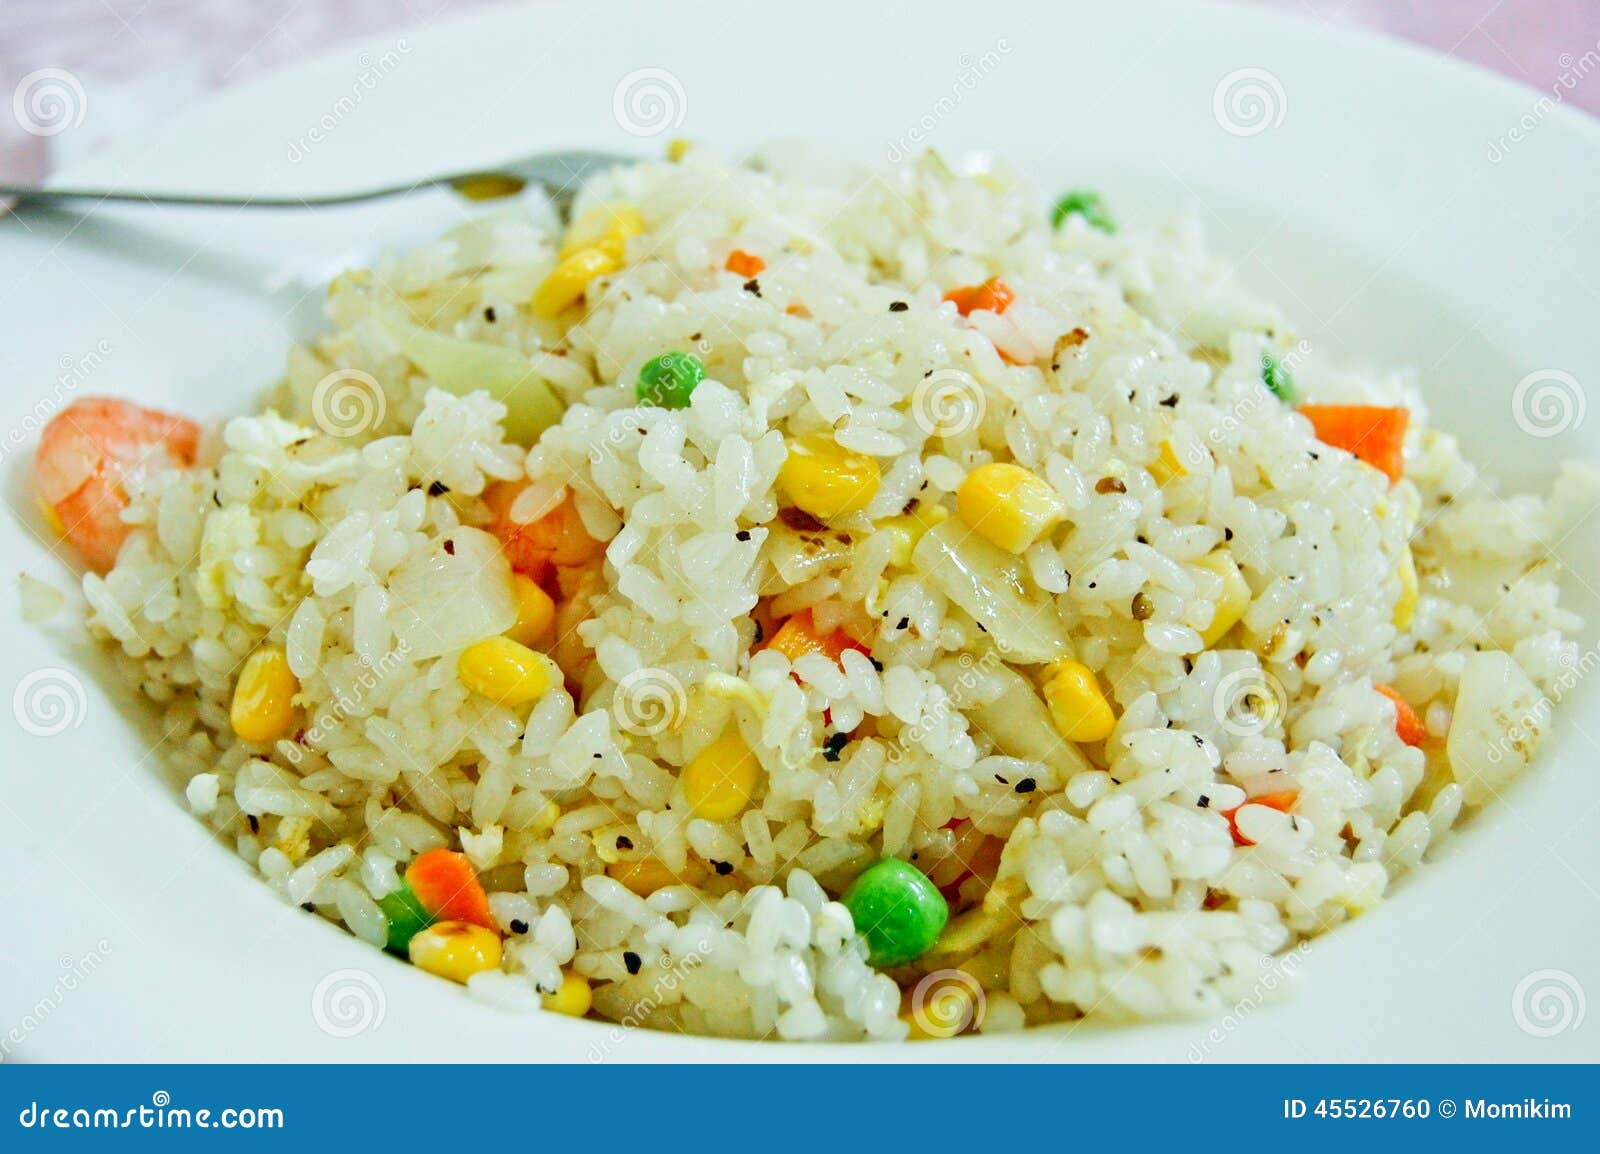 Fried Rice With Shrimp And blandade grönsaker. Kinesisk stil stekte ris med räkor och blandade grönsaker (haricot vert, havre och morötter